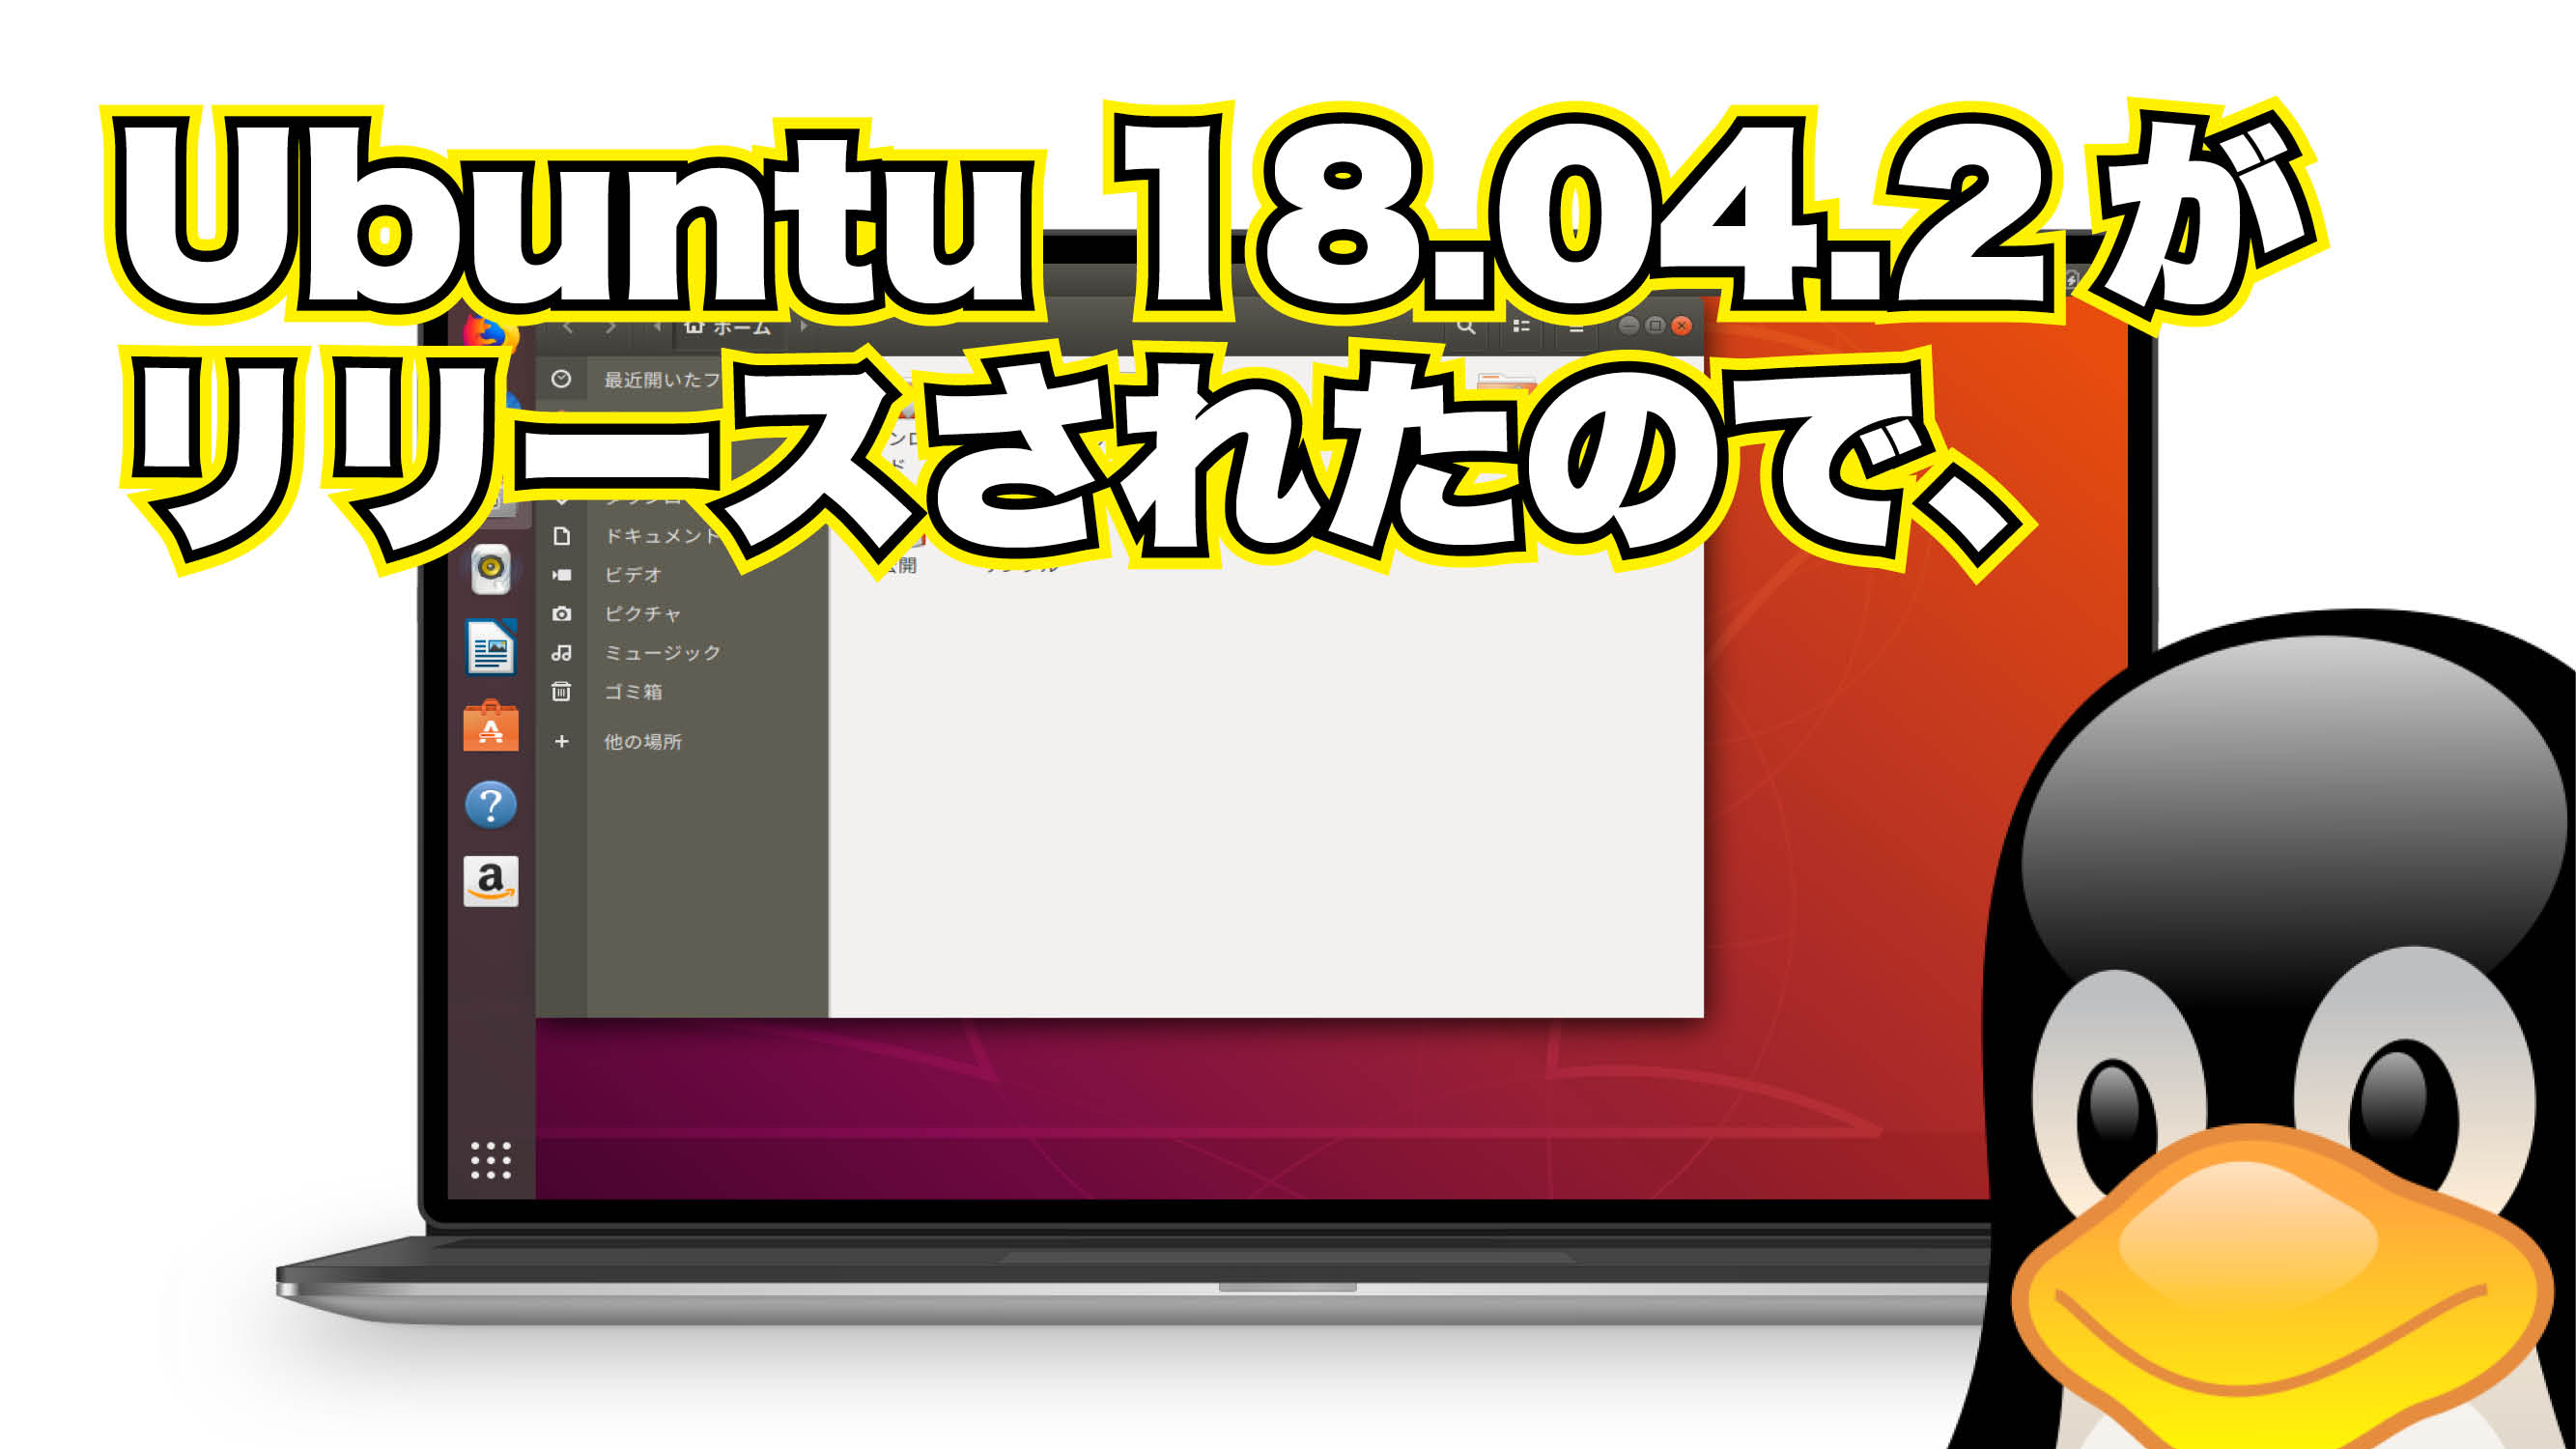 Ubuntu 18.04.2 がリリースされたので、